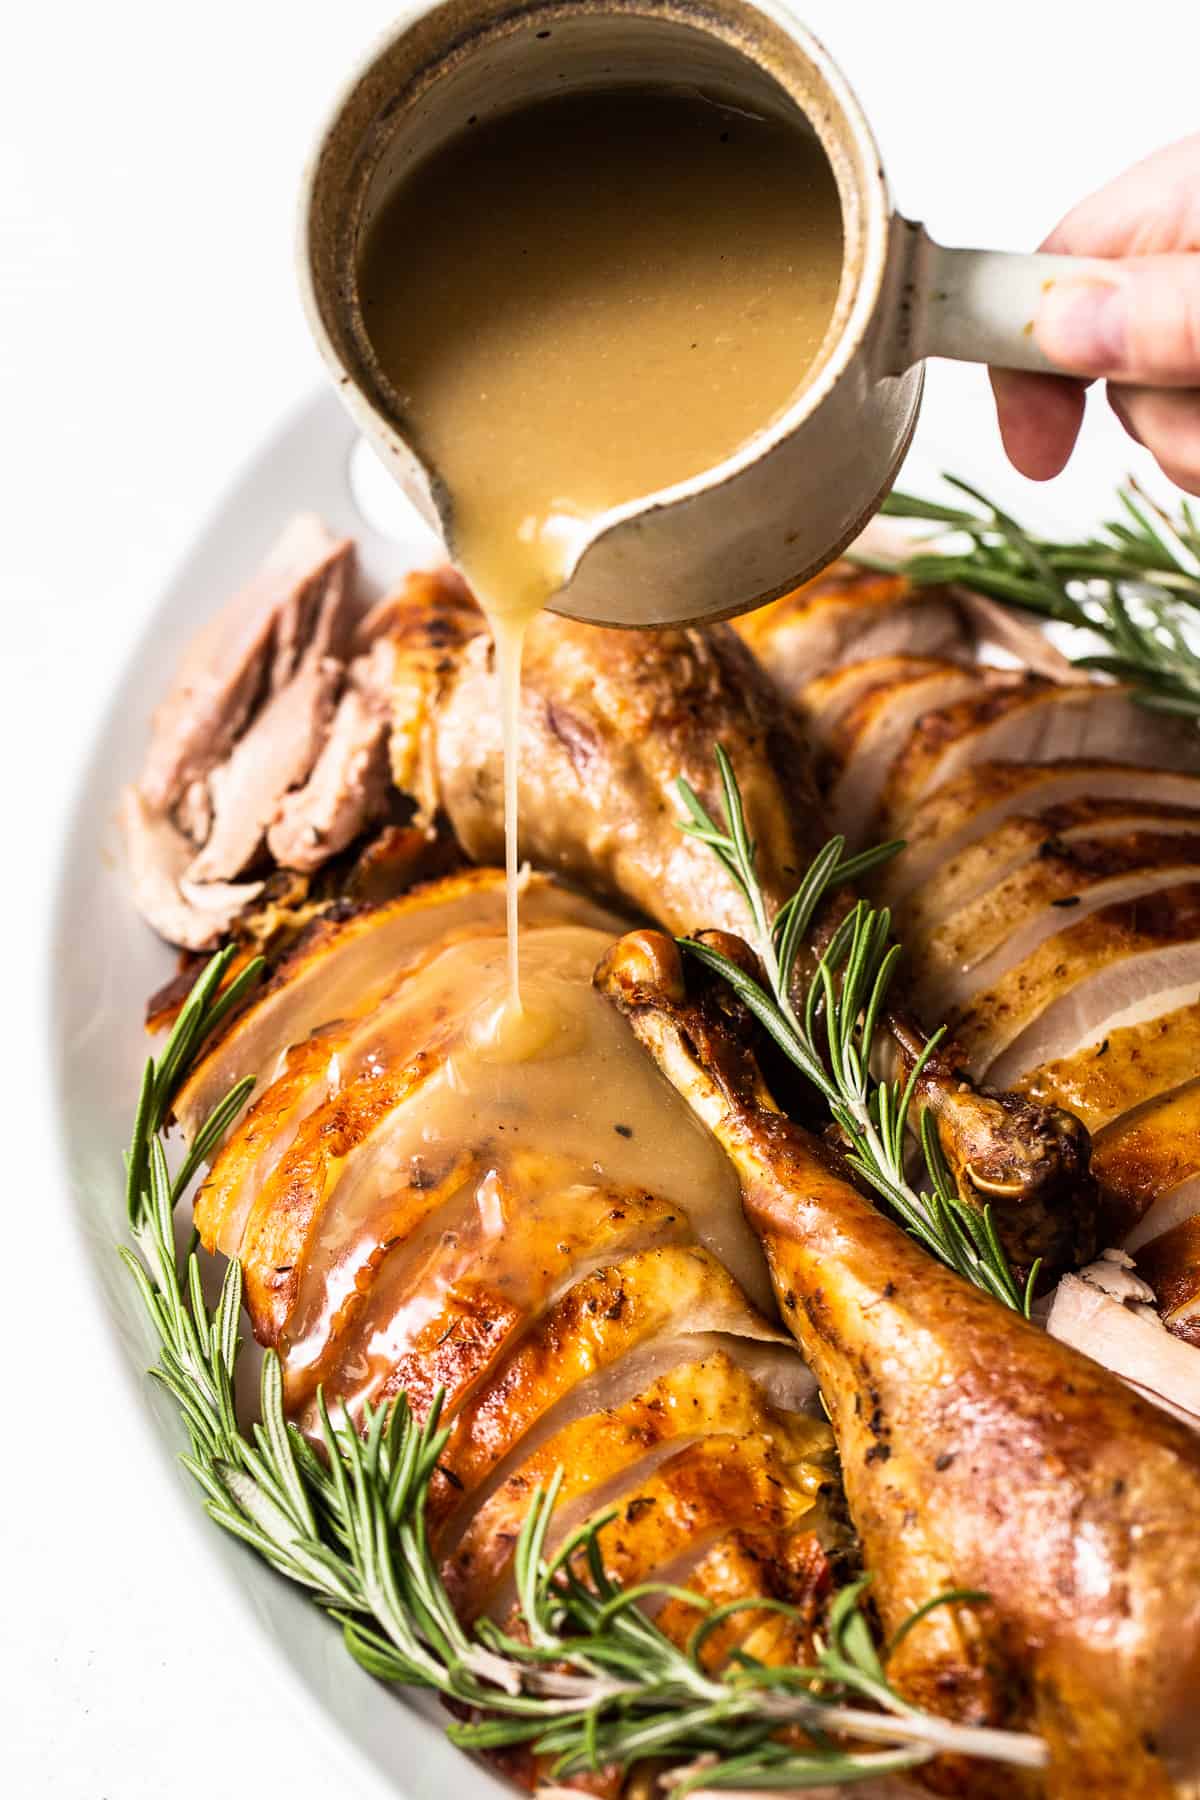 Turkey gravy being poured over sliced turkey.